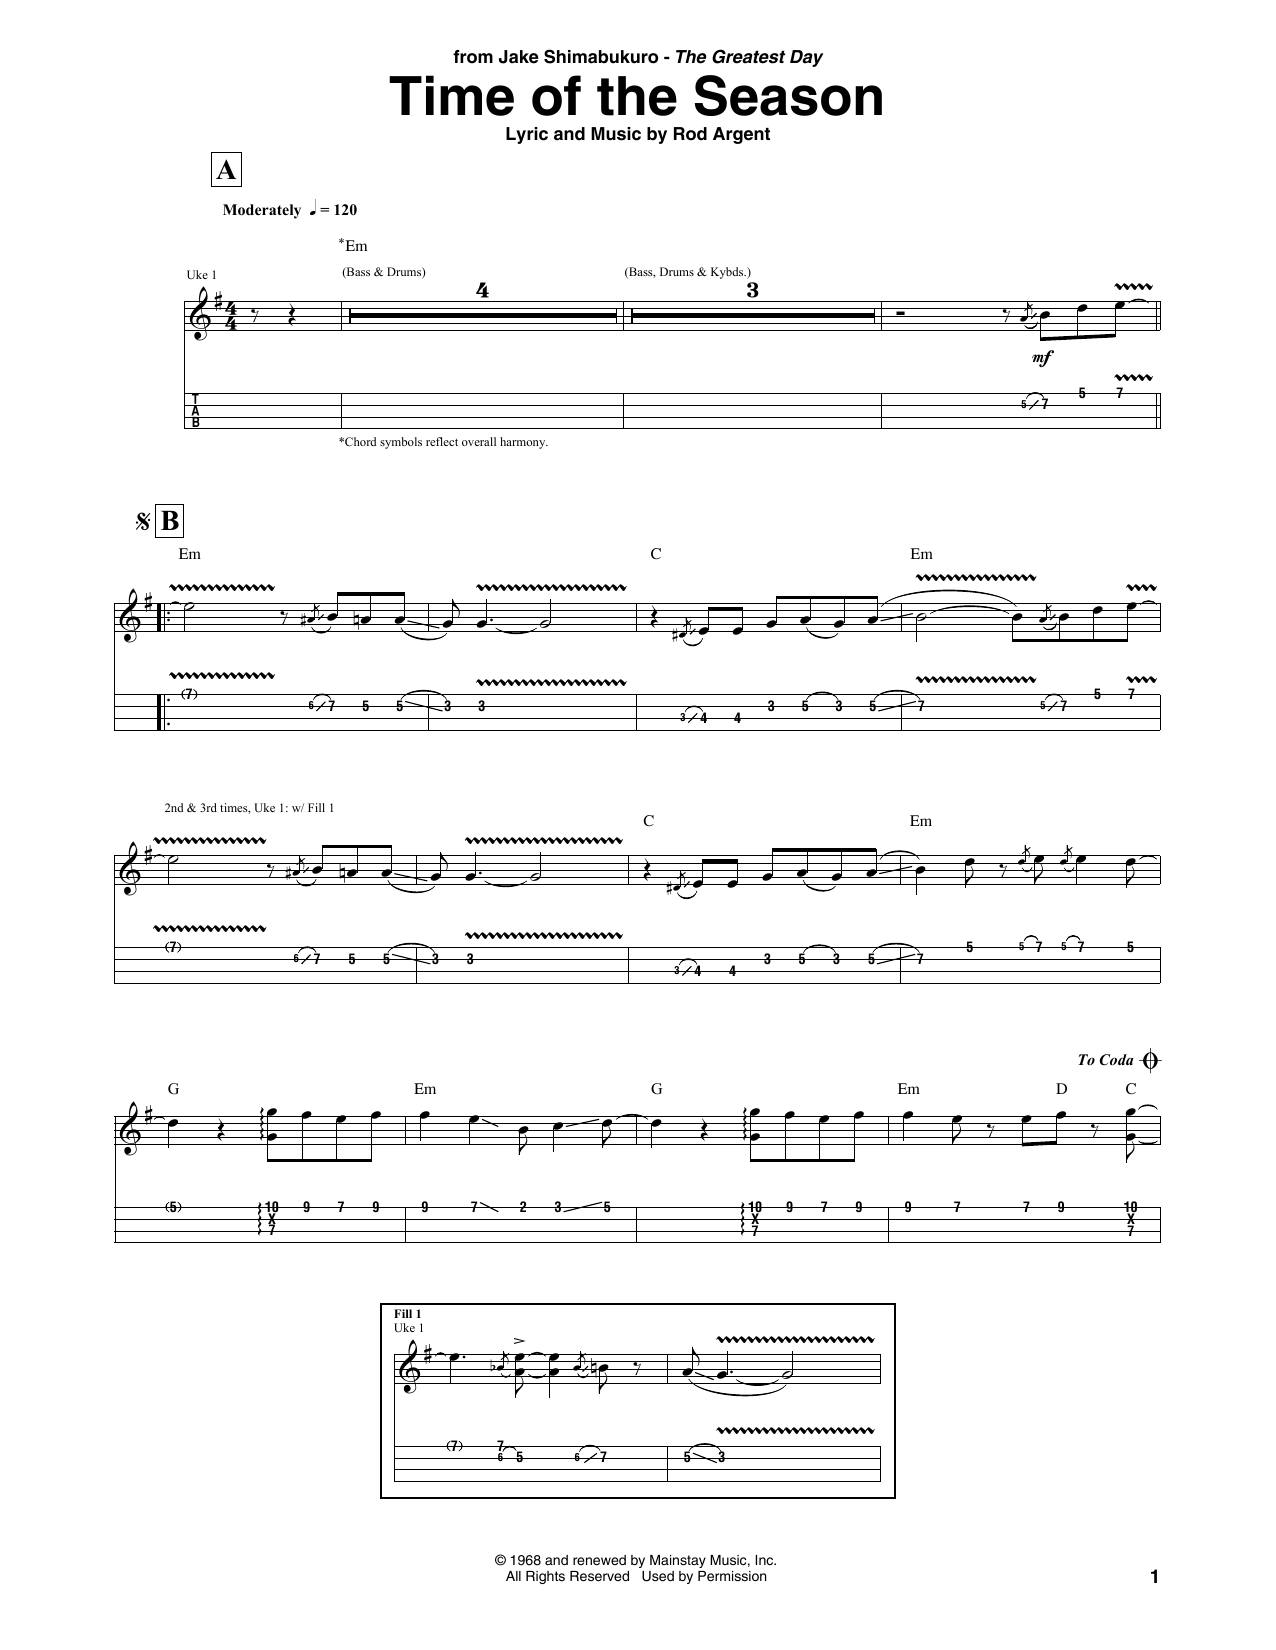 Jake Shimabukuro Time Of The Season Sheet Music Notes & Chords for Ukulele Tab - Download or Print PDF